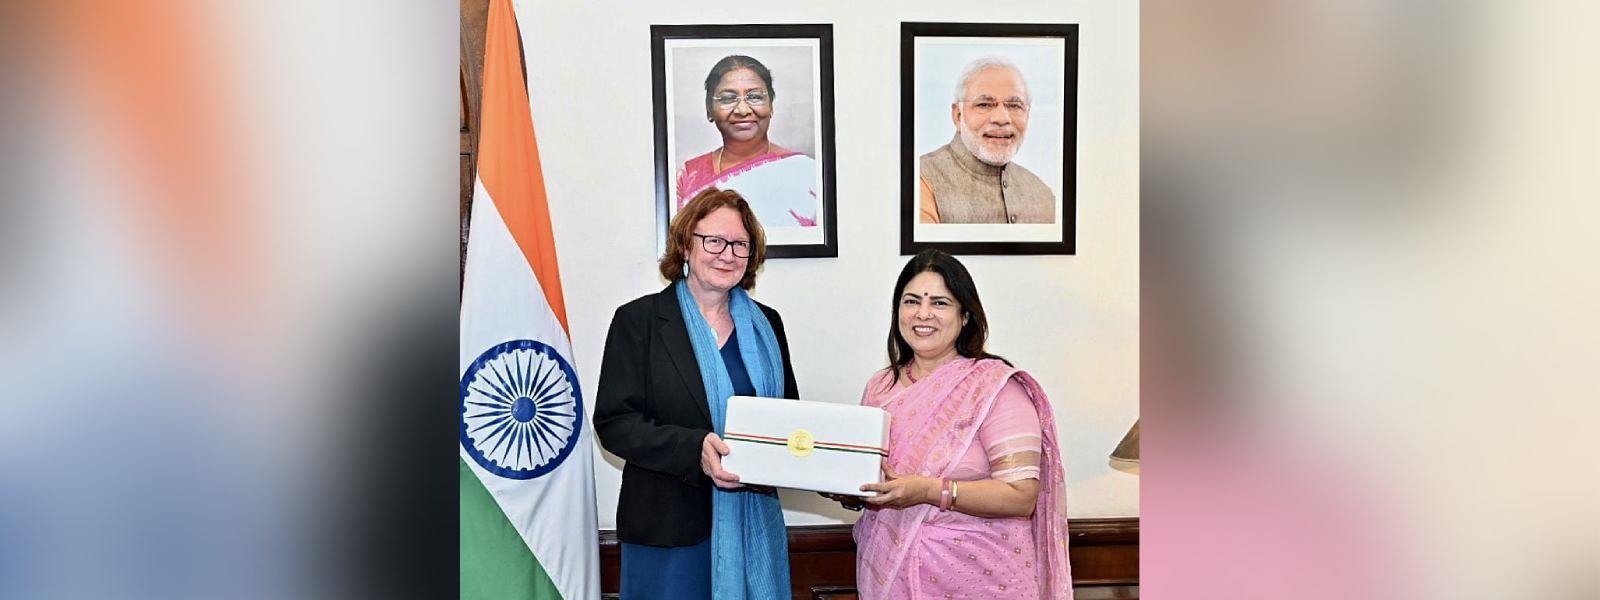 Minister of State for External Affairs Smt Meenakashi Lekhi met H.E. Ms. Bjorg Sandkjaer, Deputy Foreign Minister of Norway in New Delhi